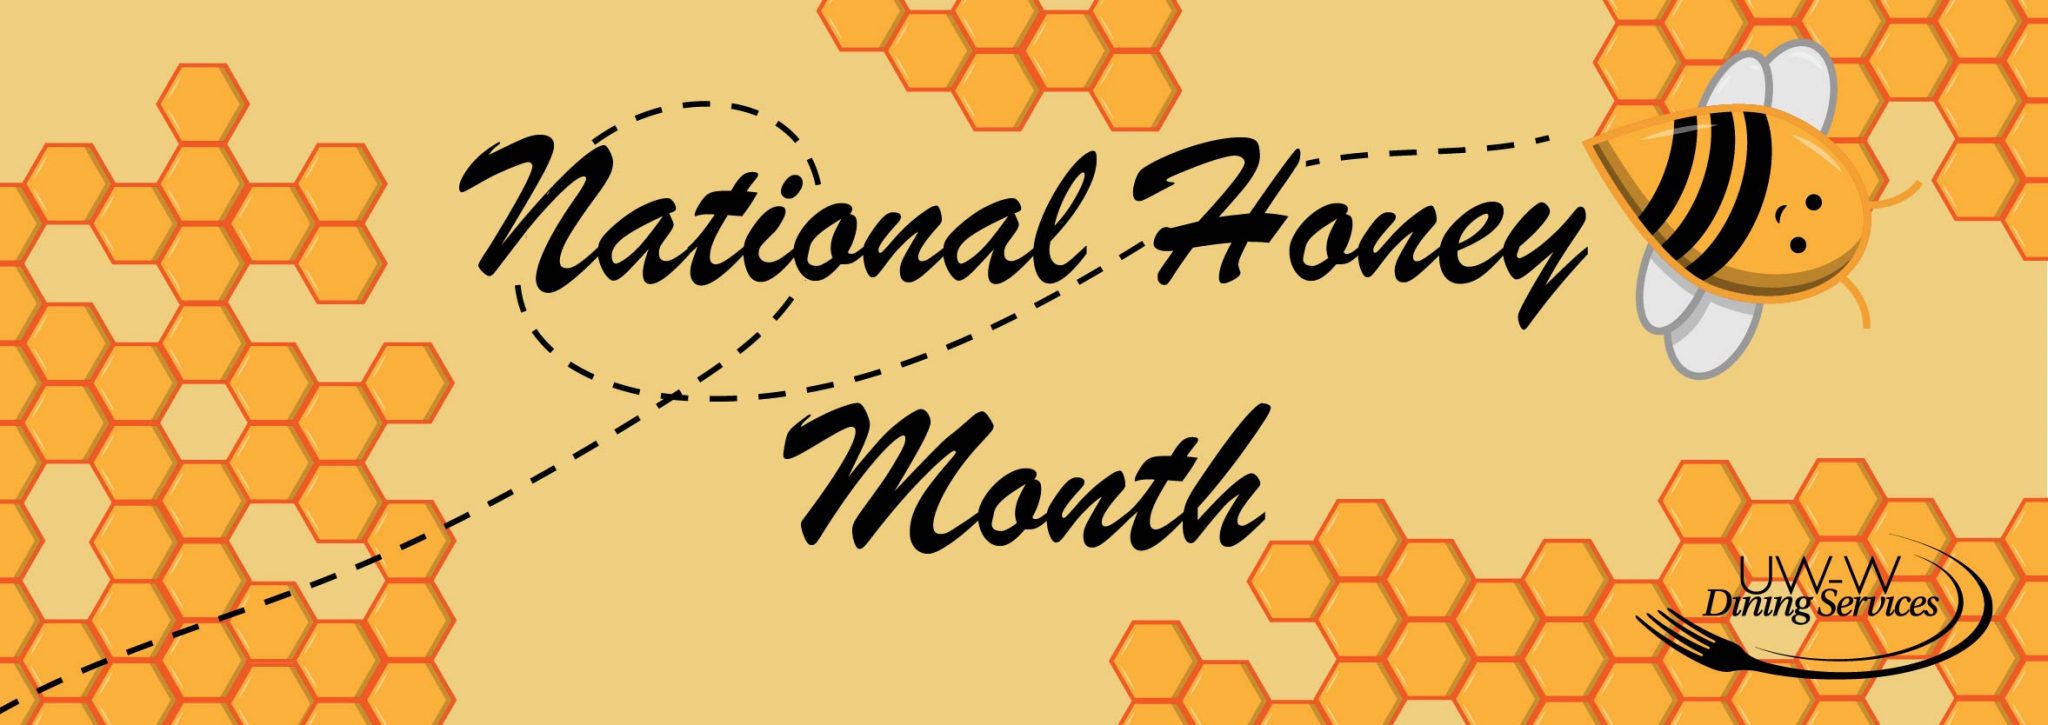 September National Honey Month University Center Blog